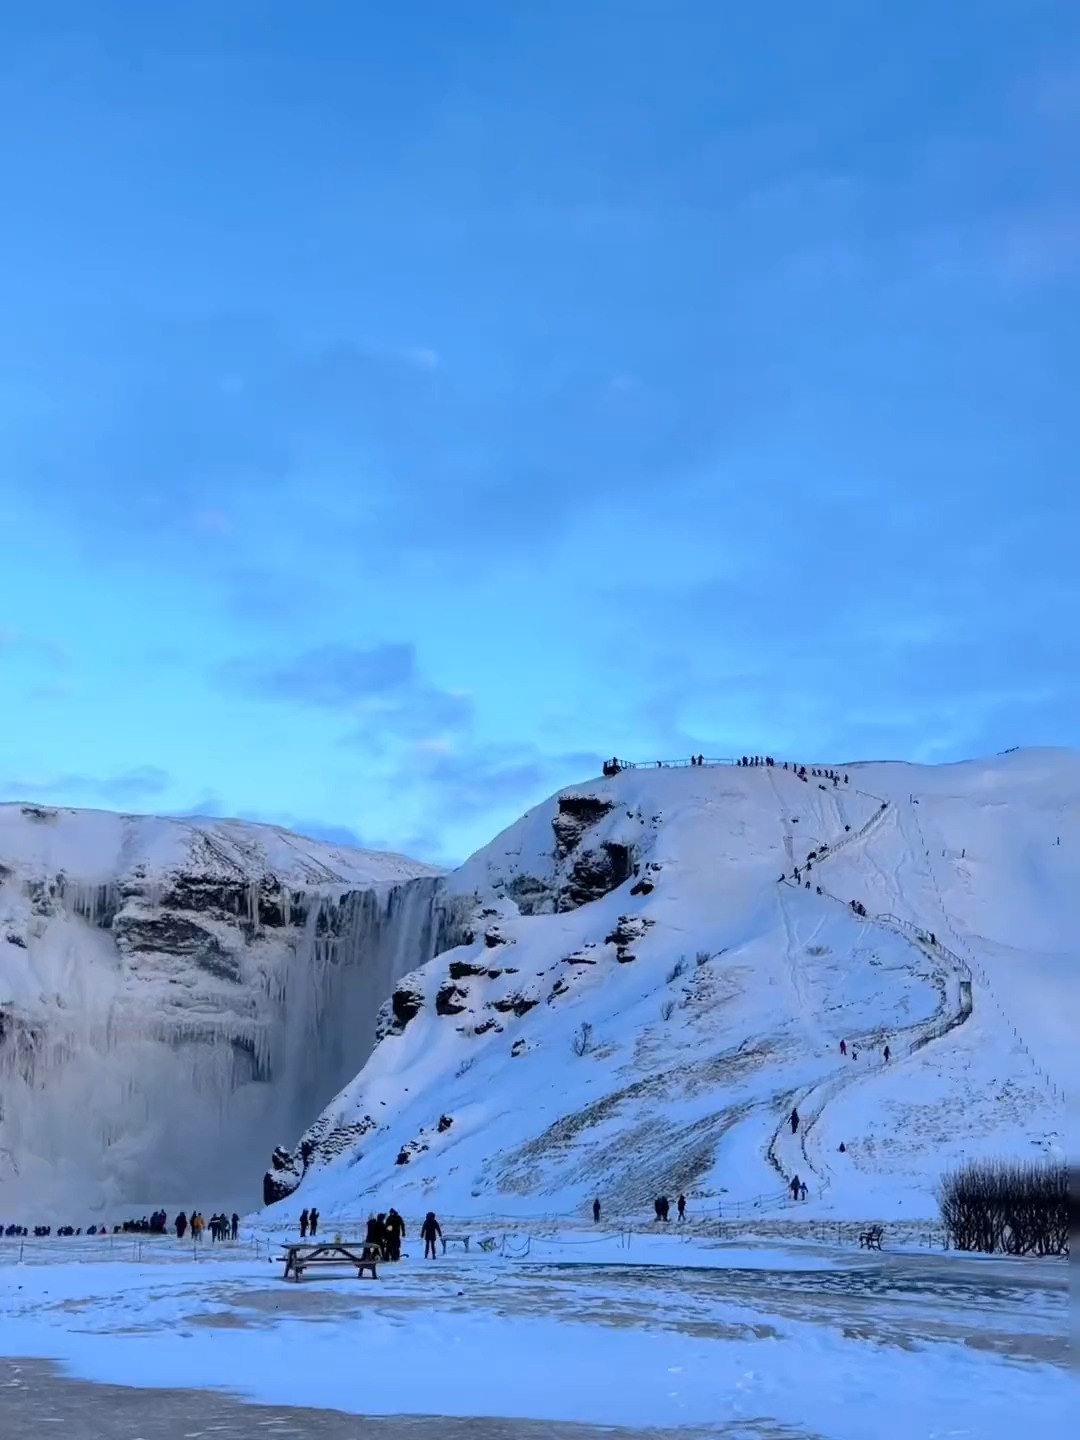 这个冬天总要去一次冰岛吧